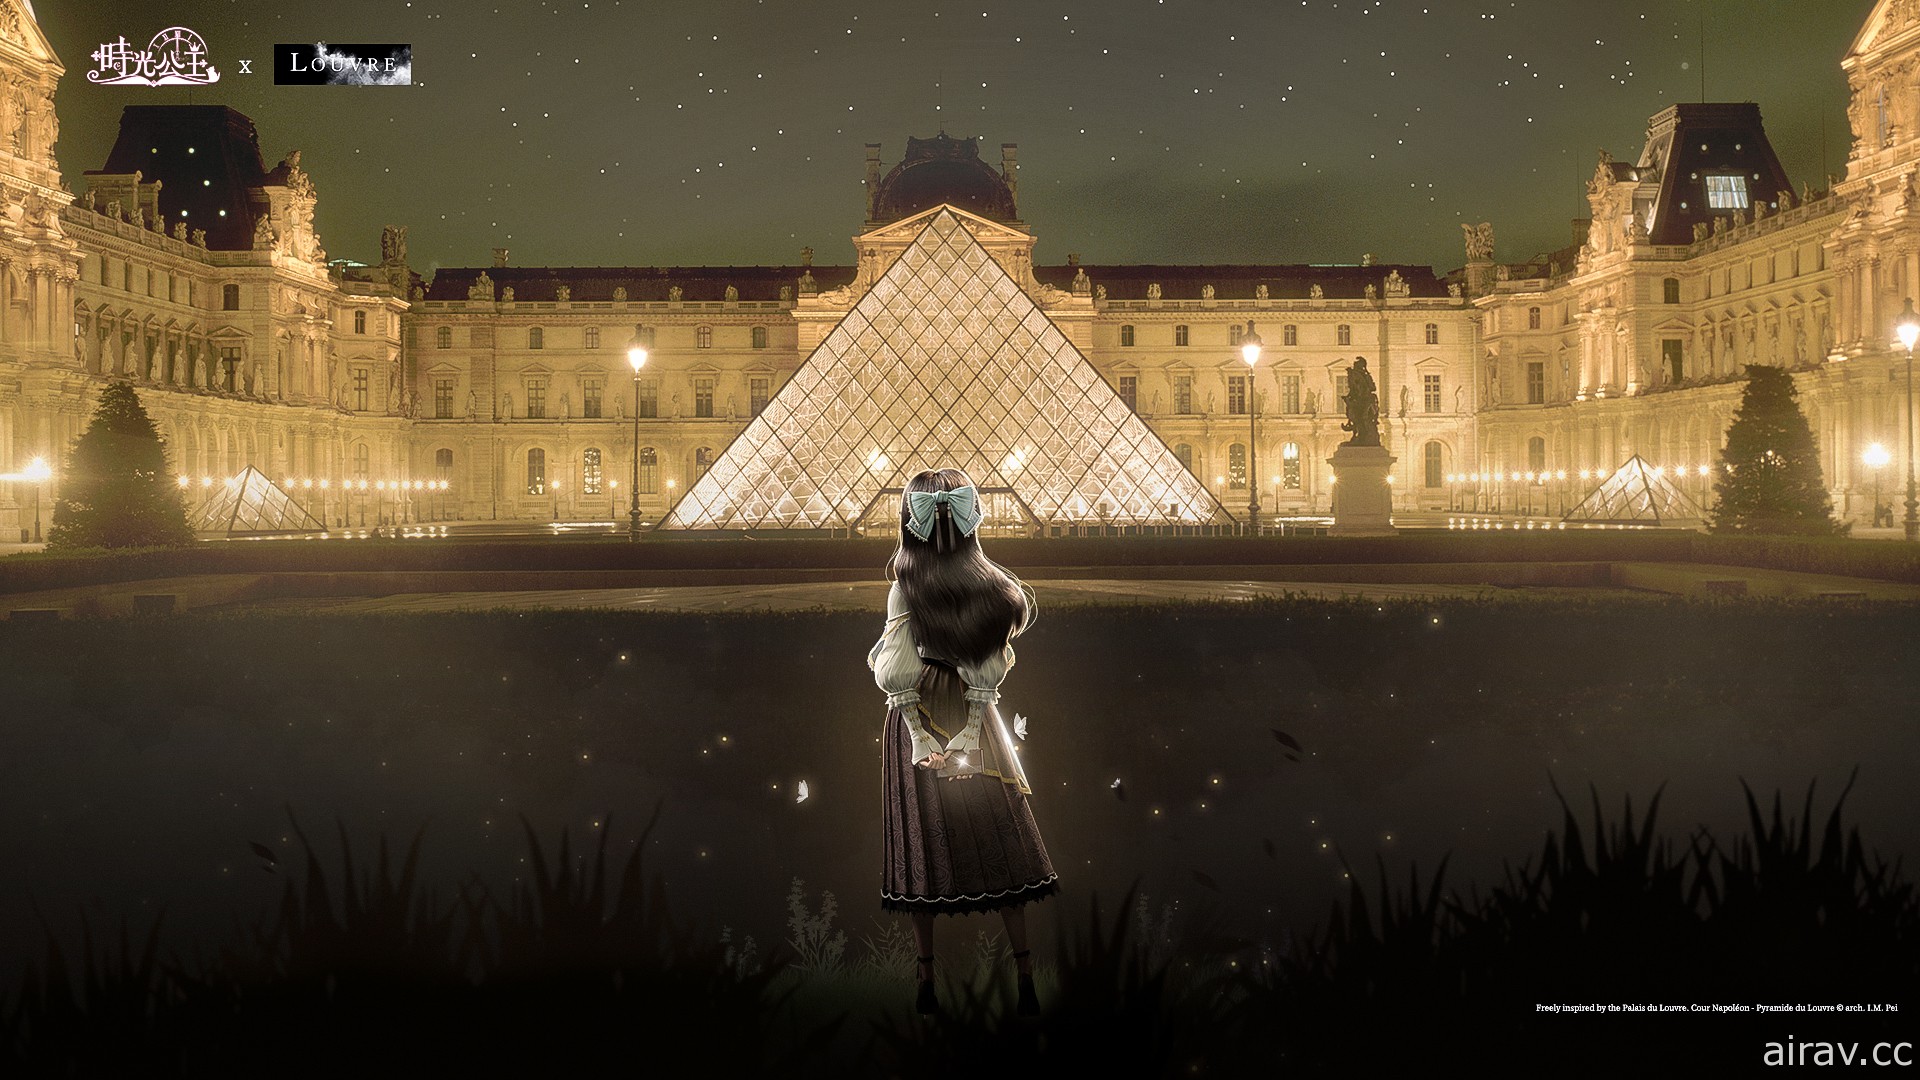 參觀羅浮宮不用去法國 《時光公主》x《羅浮宮 Louvre》跨界聯動正式展開